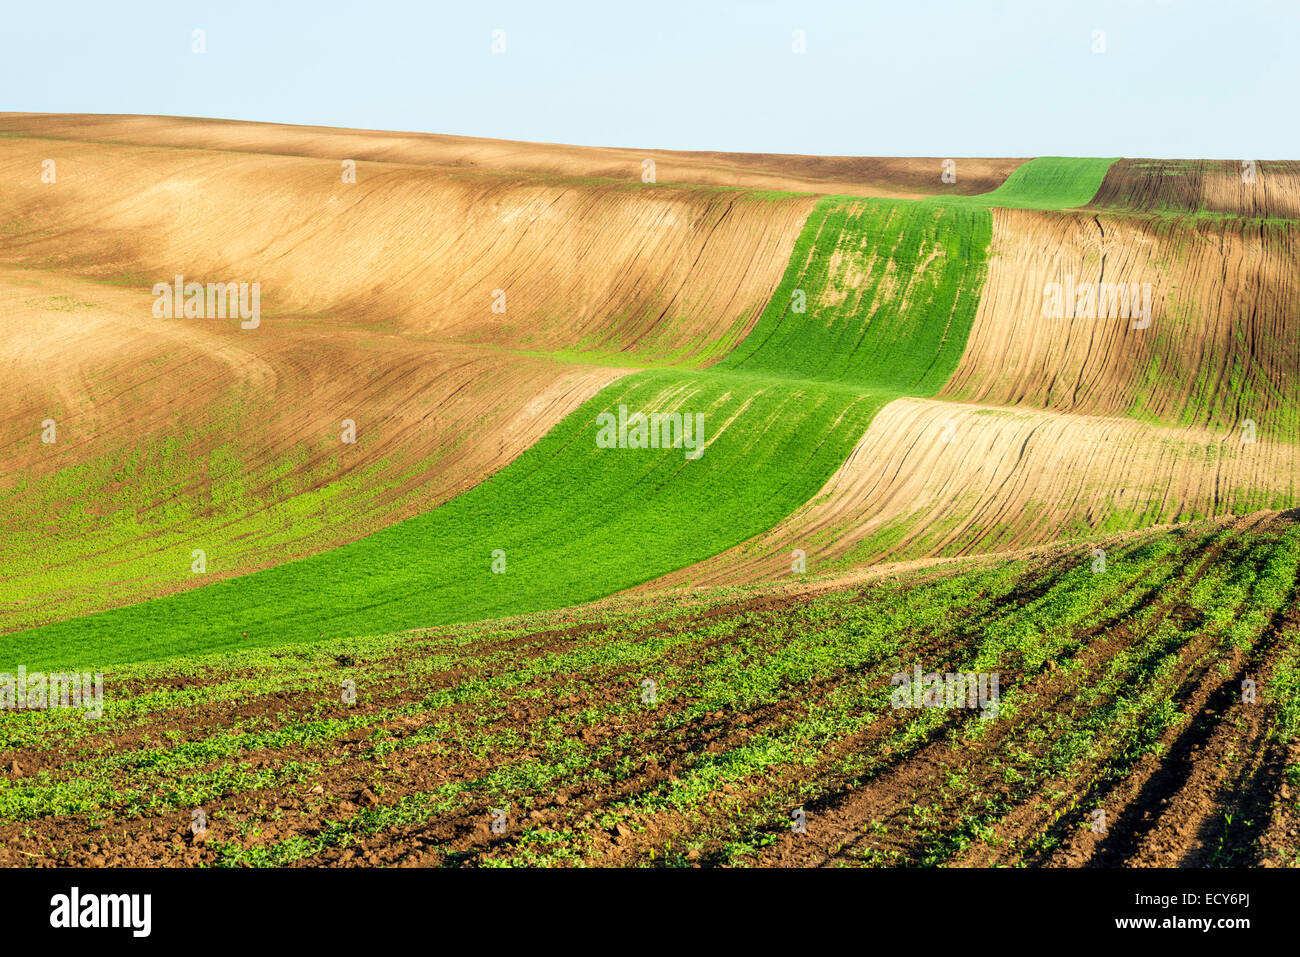 Hilly fields, Hovorany, Hodonin district, Jihomoravsky county, Czech Republic Stock Photo